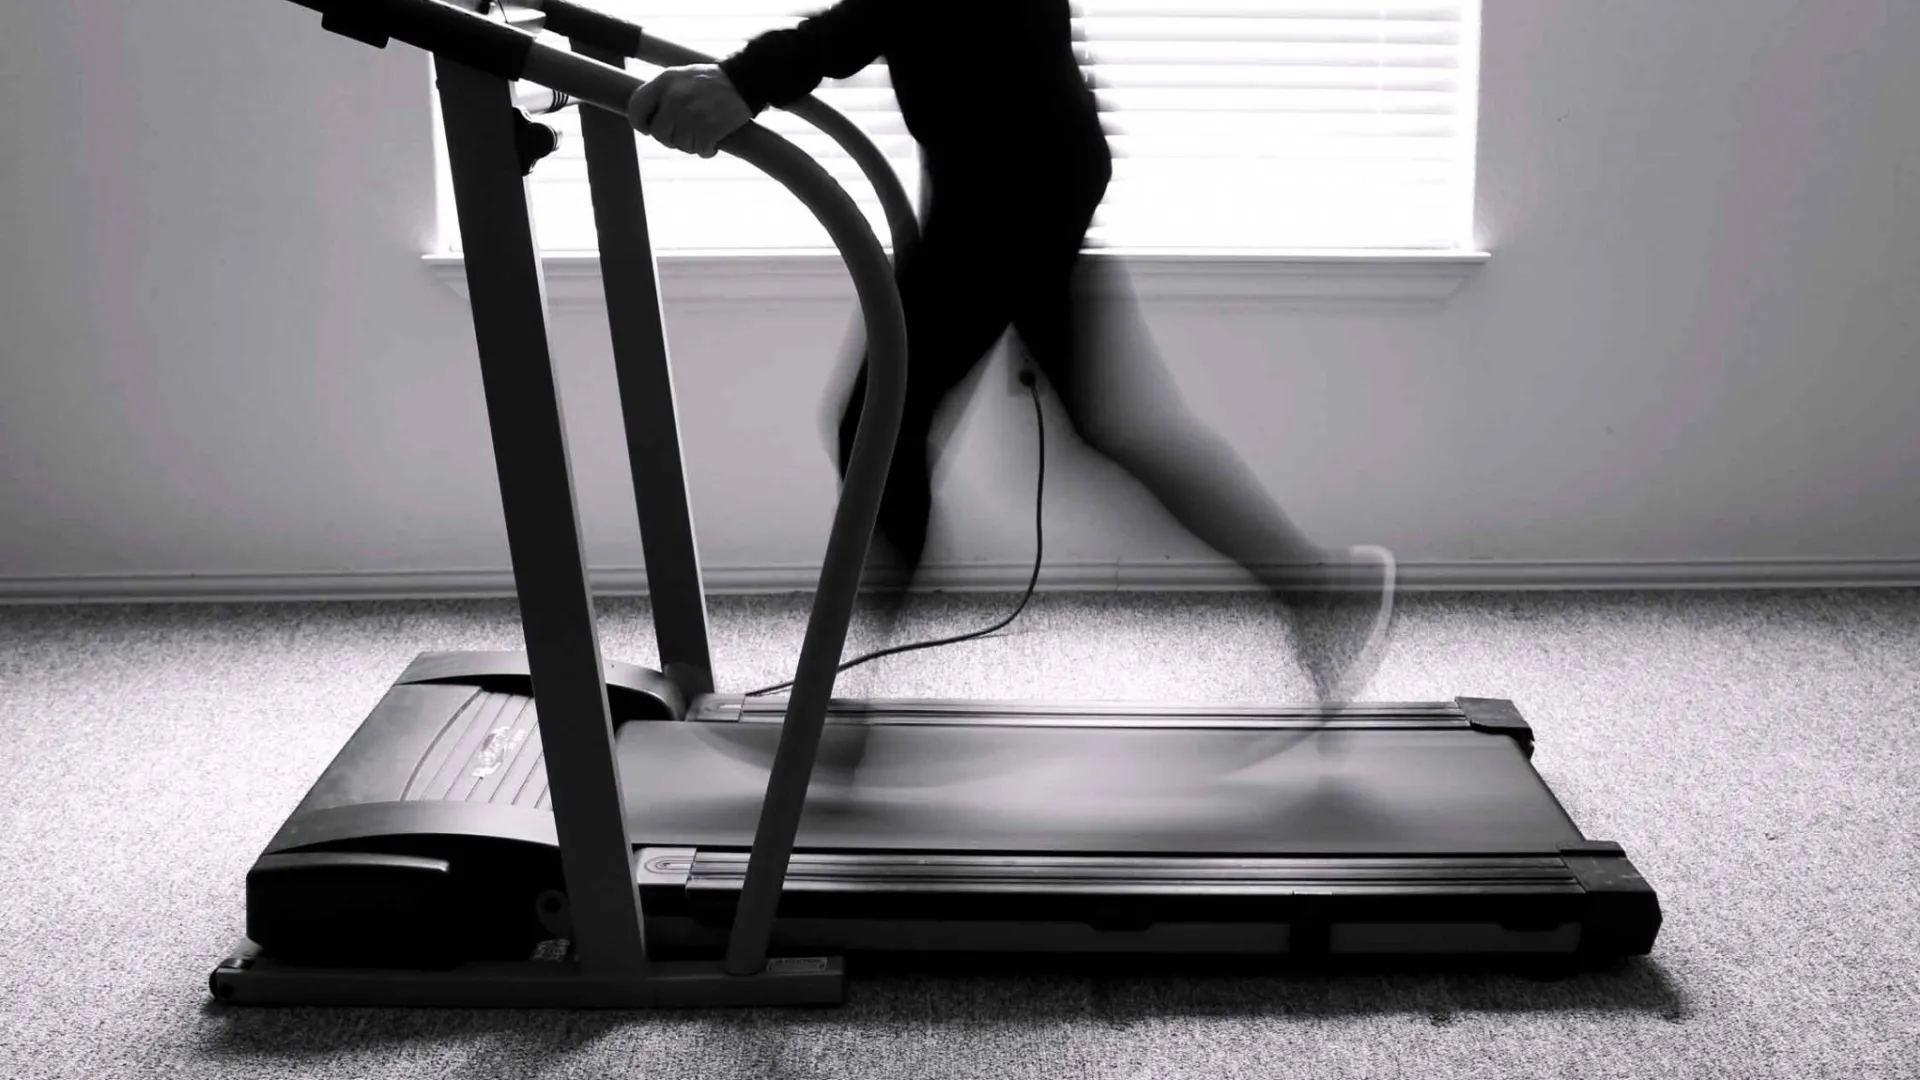 Exerciser on a treadmill.